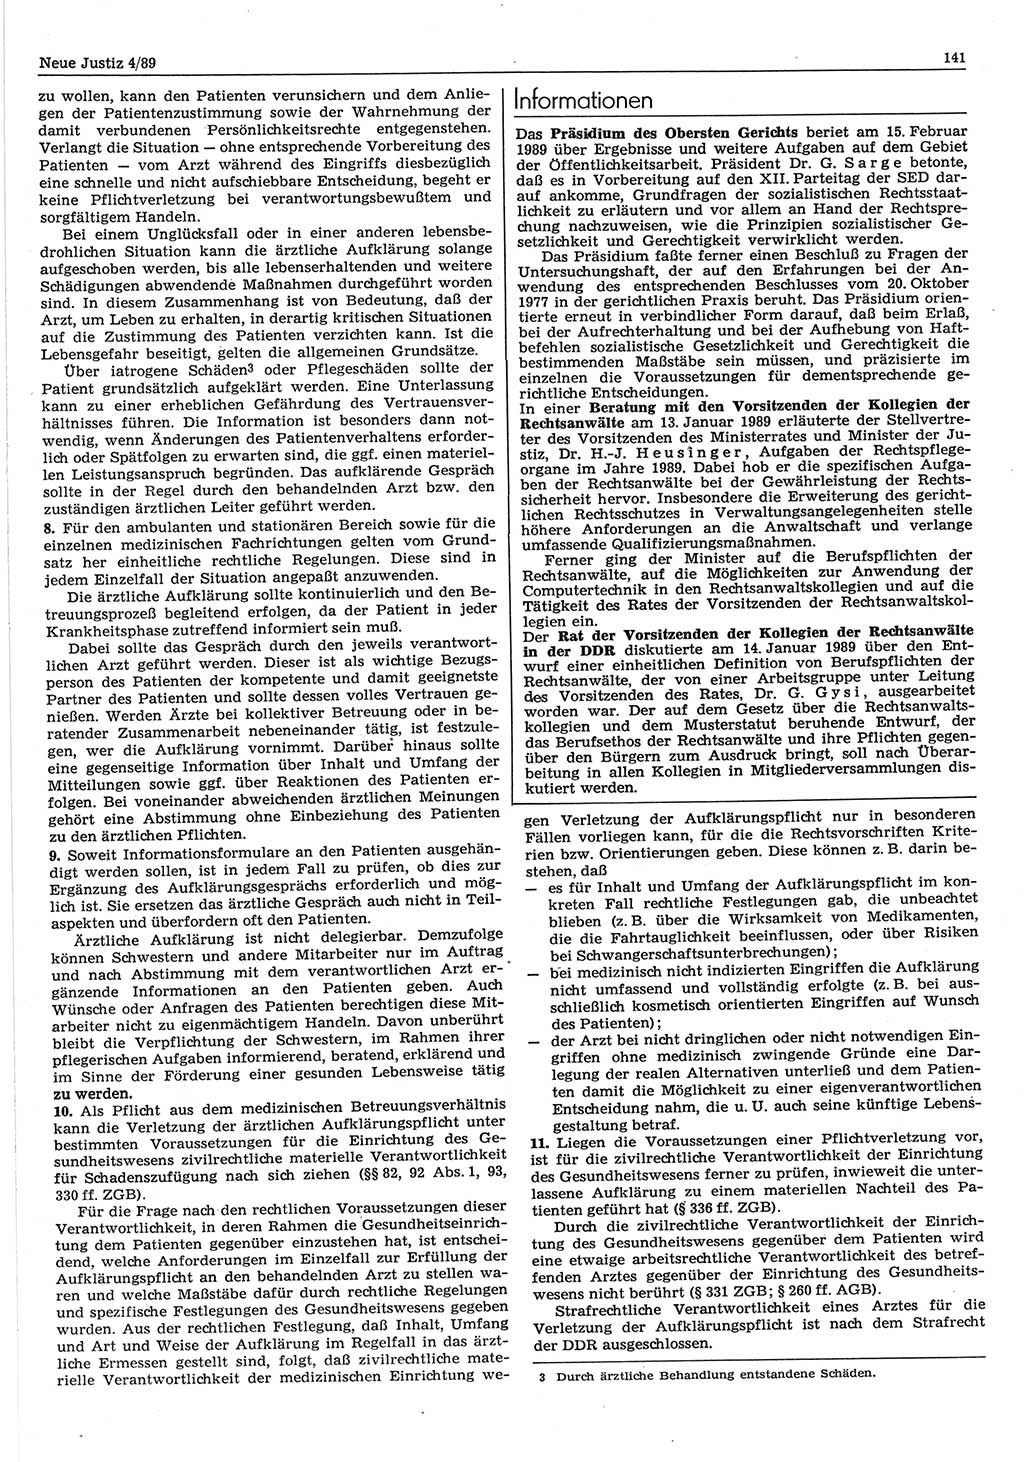 Neue Justiz (NJ), Zeitschrift für sozialistisches Recht und Gesetzlichkeit [Deutsche Demokratische Republik (DDR)], 43. Jahrgang 1989, Seite 141 (NJ DDR 1989, S. 141)